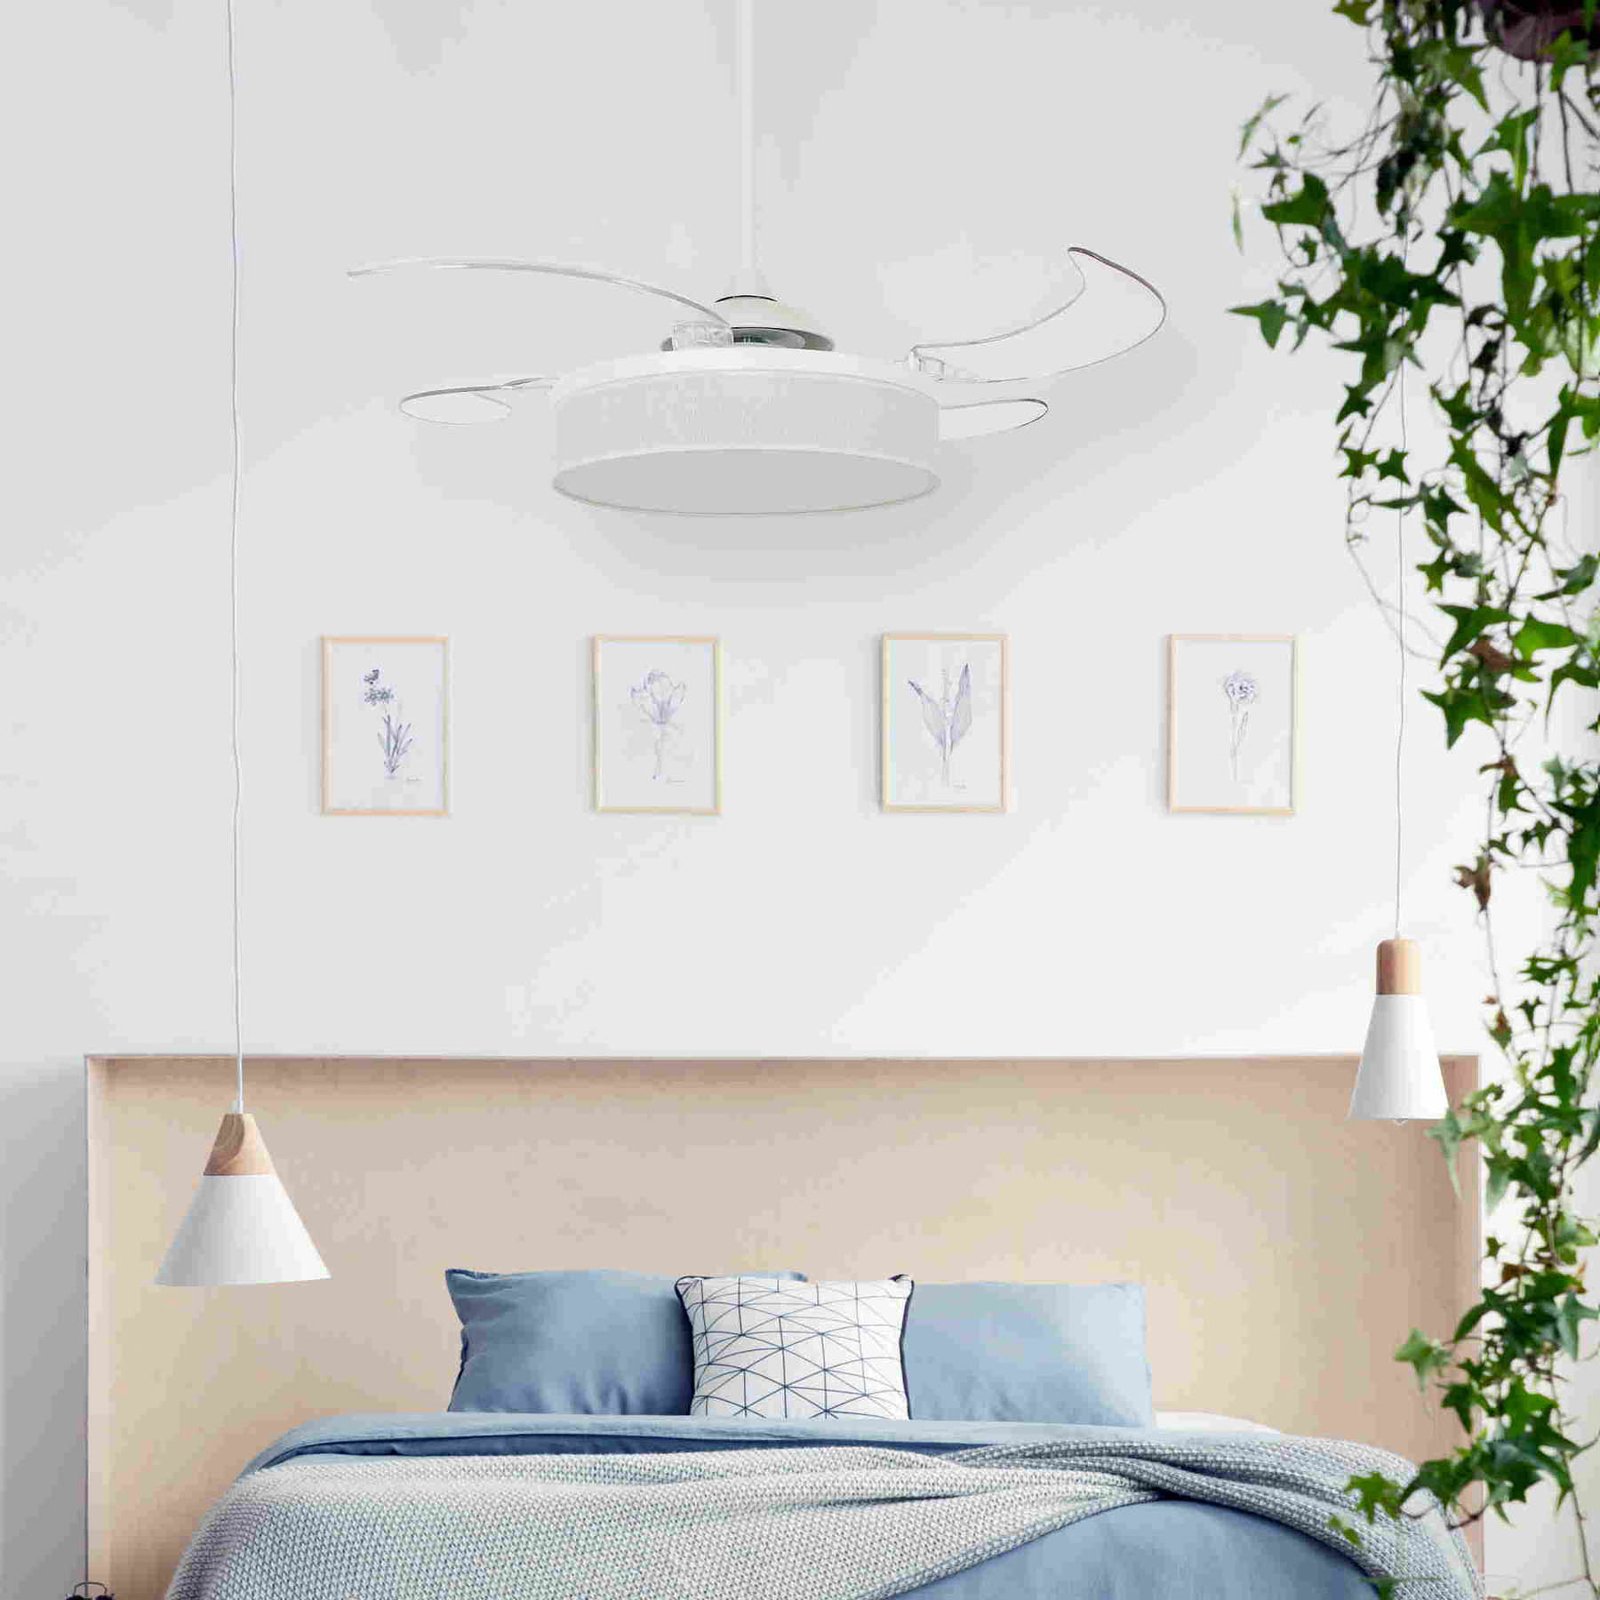 Beacon ceiling fan light Fanaway Fraser white/clear quiet